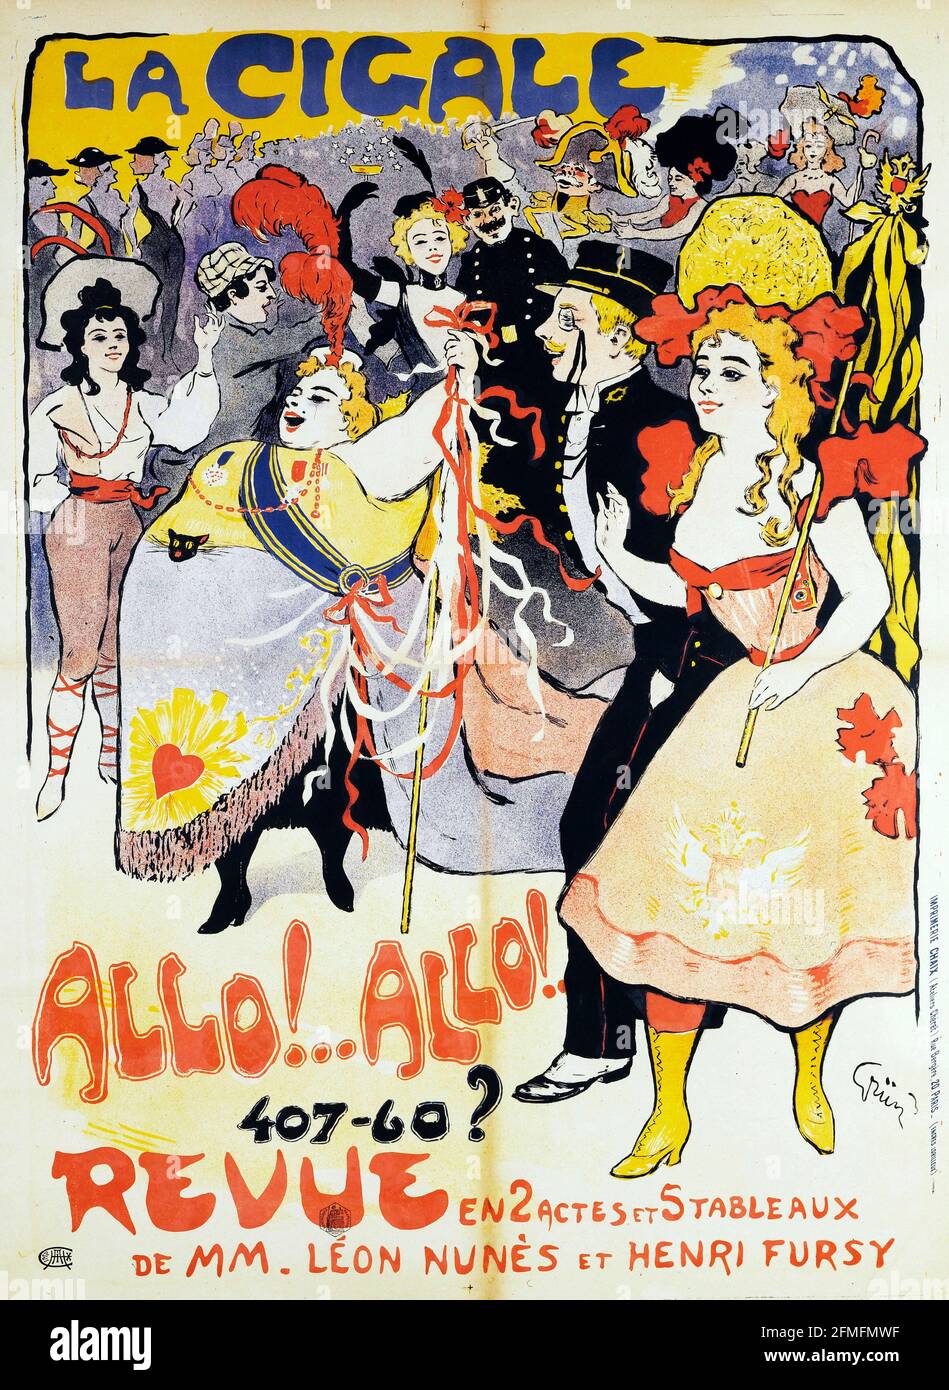 Jules Alexandre Grün (1868-1938). Imprimerie Chaix. La Cigale, allo !...tutto ! 407-60?, Revue. Poster. 1900. Parigi, poster Belle époque. Foto Stock